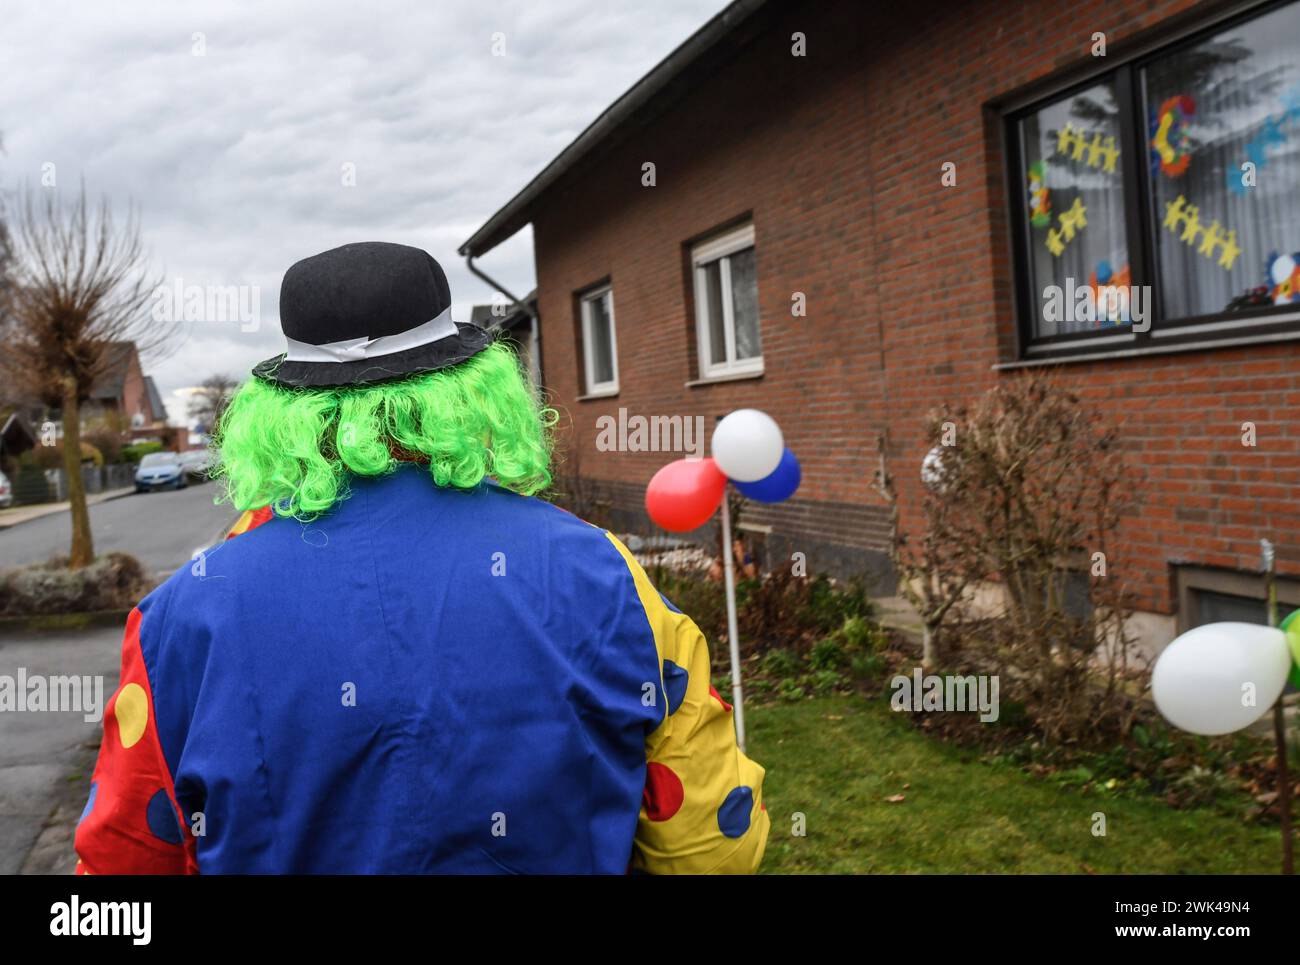 Rheinischer Frohsinn: ein Clown untzrwegs in Merzenich im Rheinland. *** Rheinischer Frohsinn un clown sulla strada a Merzenich nella Renania Foto Stock